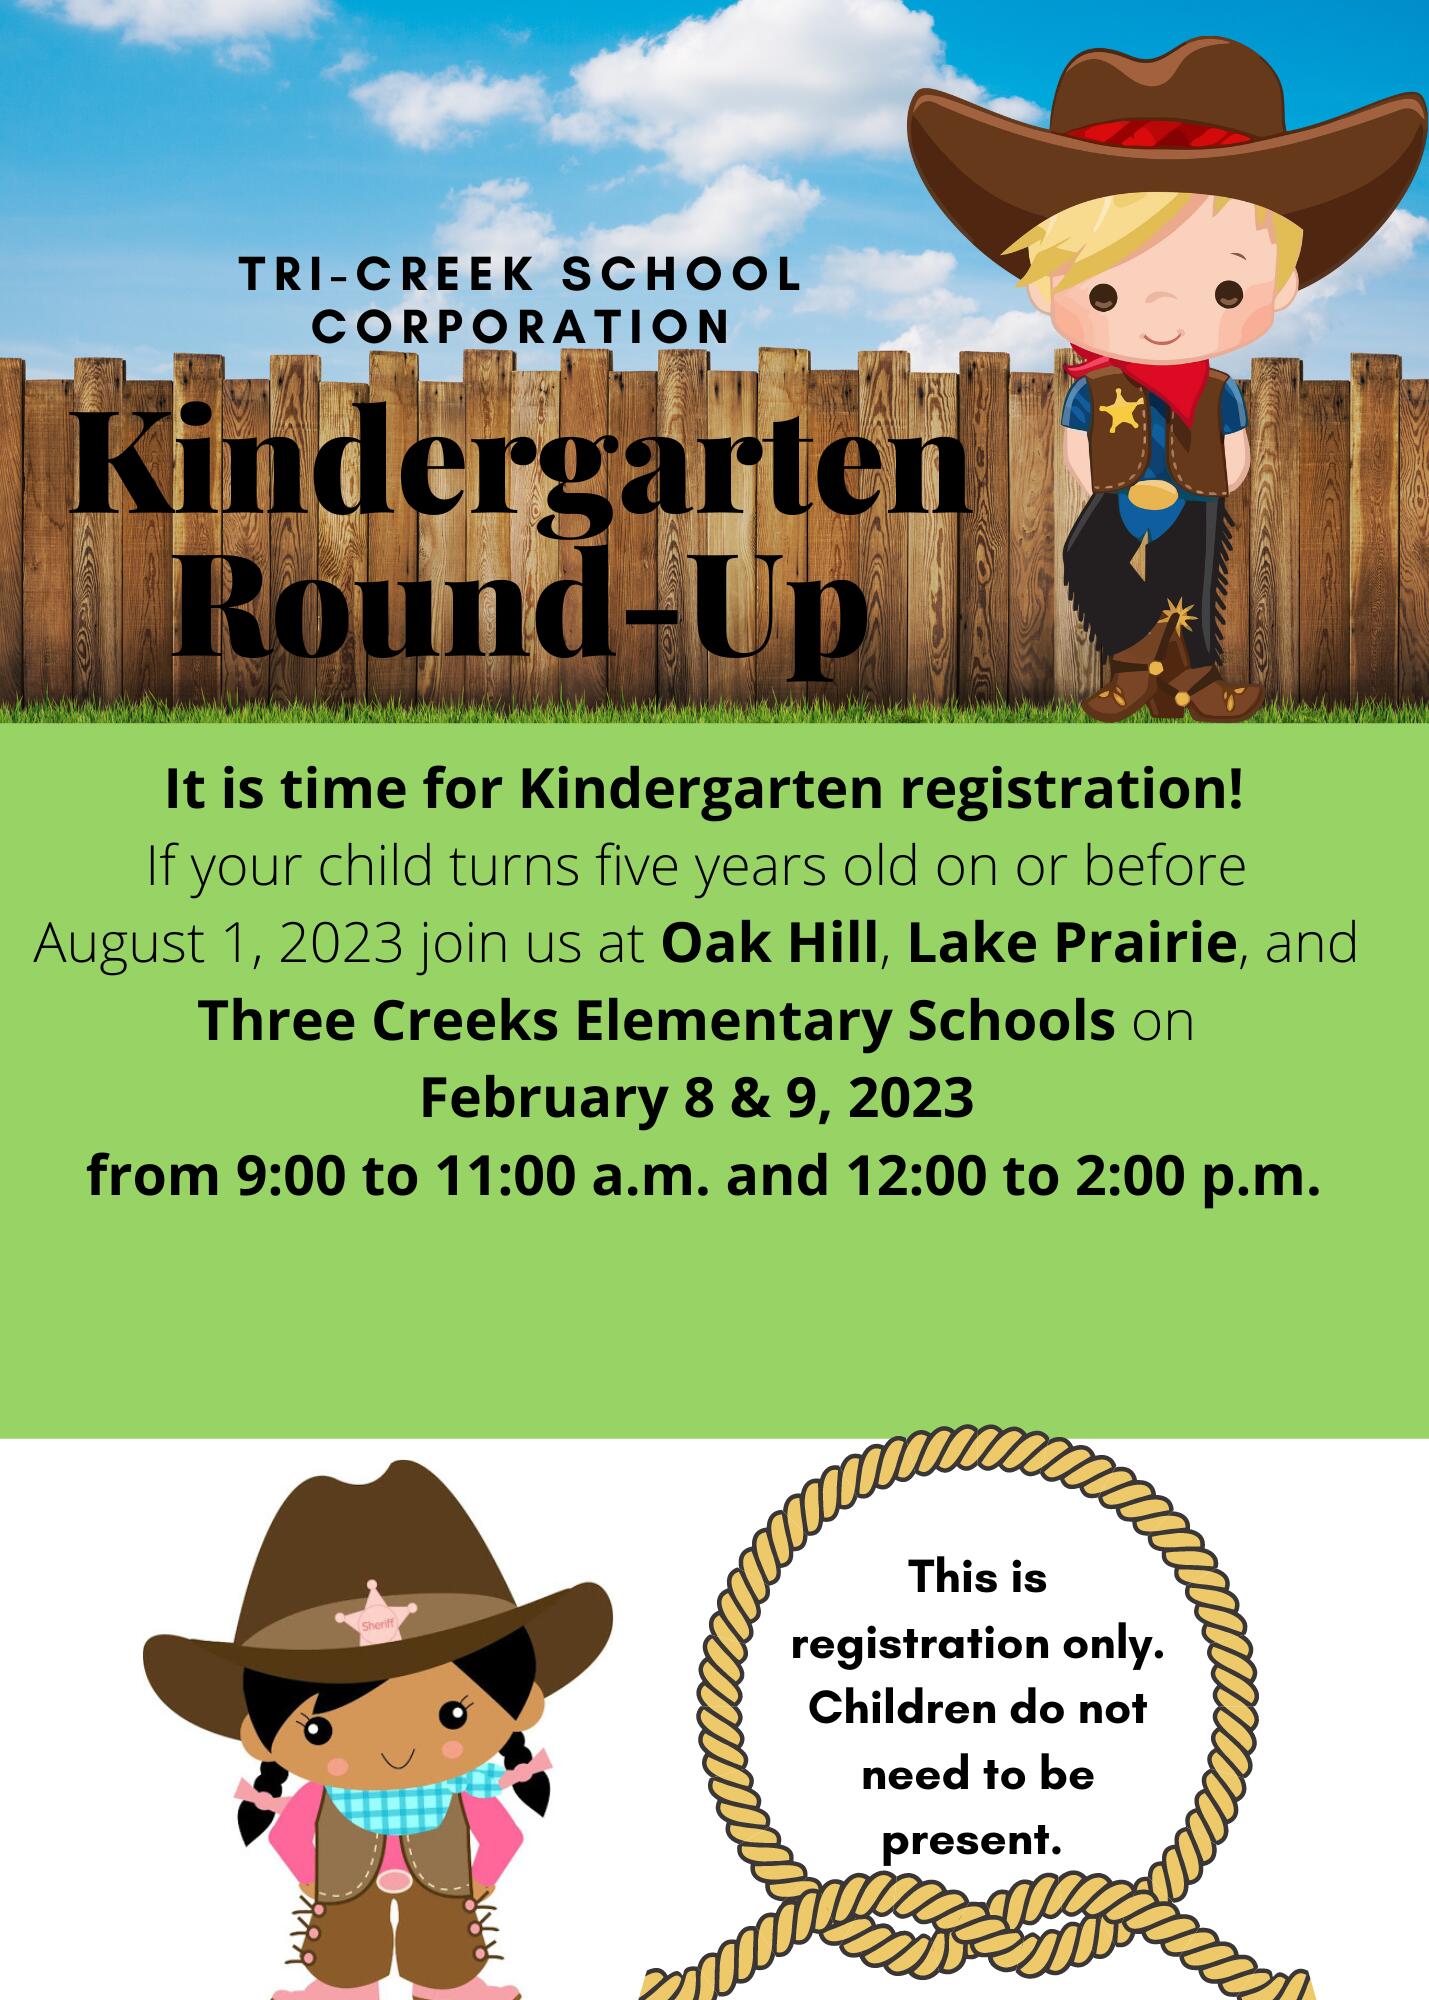 Information for Kindergarten registration.